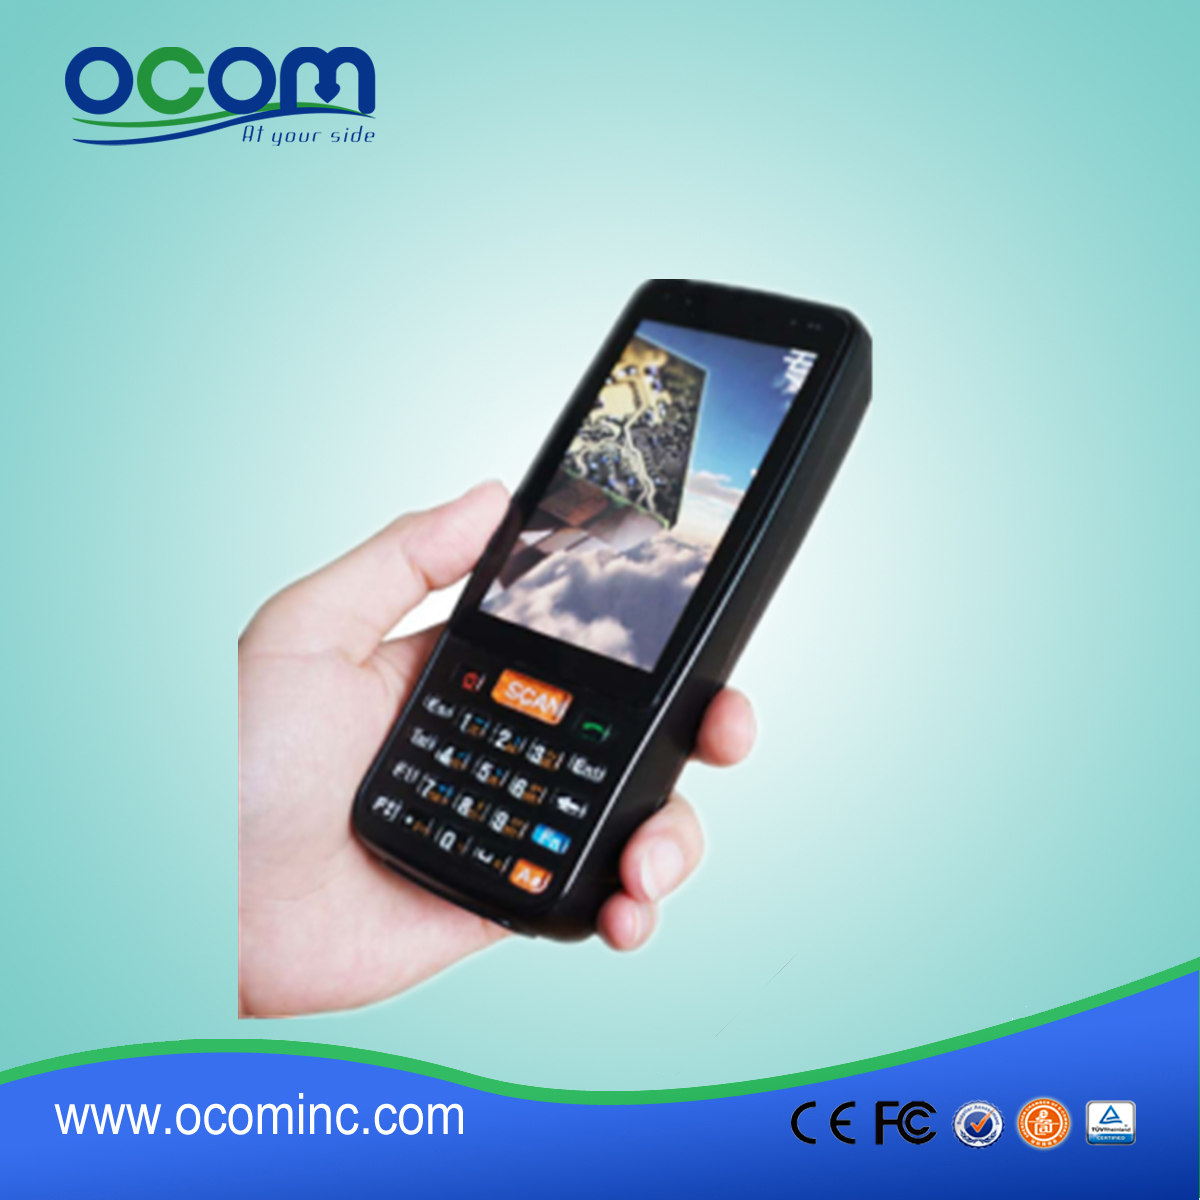 OCBS-D4000 4 ιντσών PDA Android με 1D / 2D σαρωτή Προαιρετικό